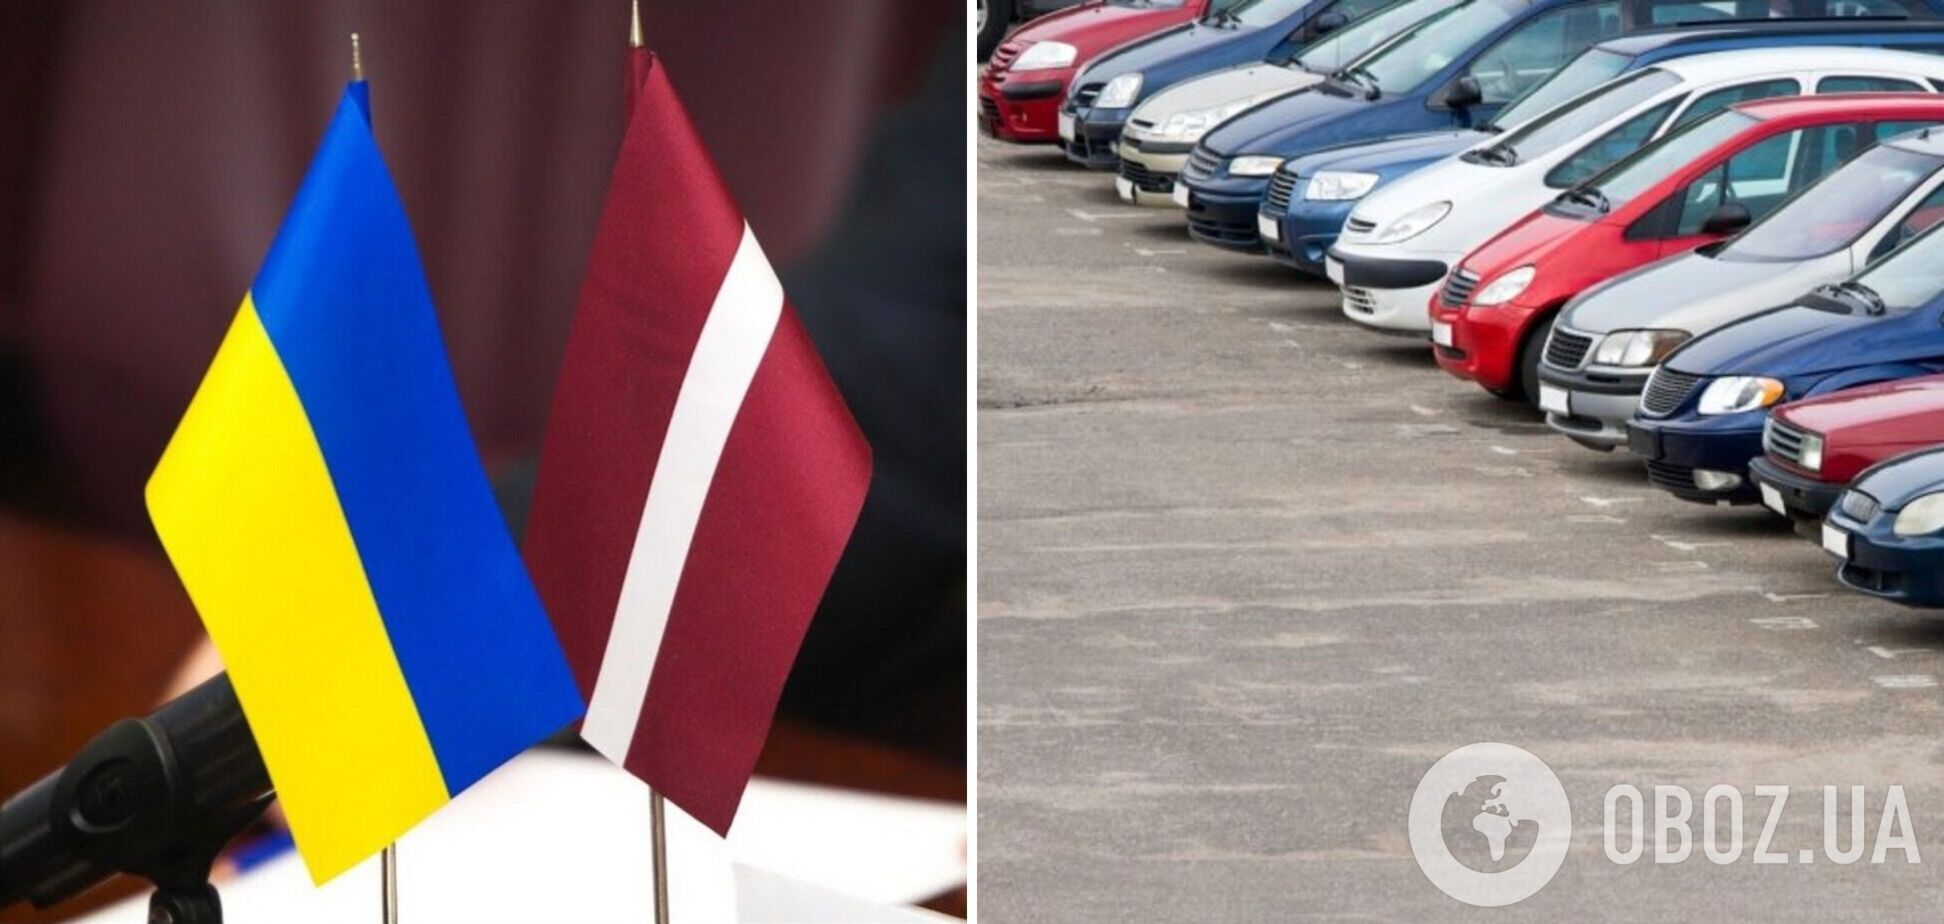 Латвия передала ВСУ и украинским больницам первые авто, конфискованные у пьяных водителей